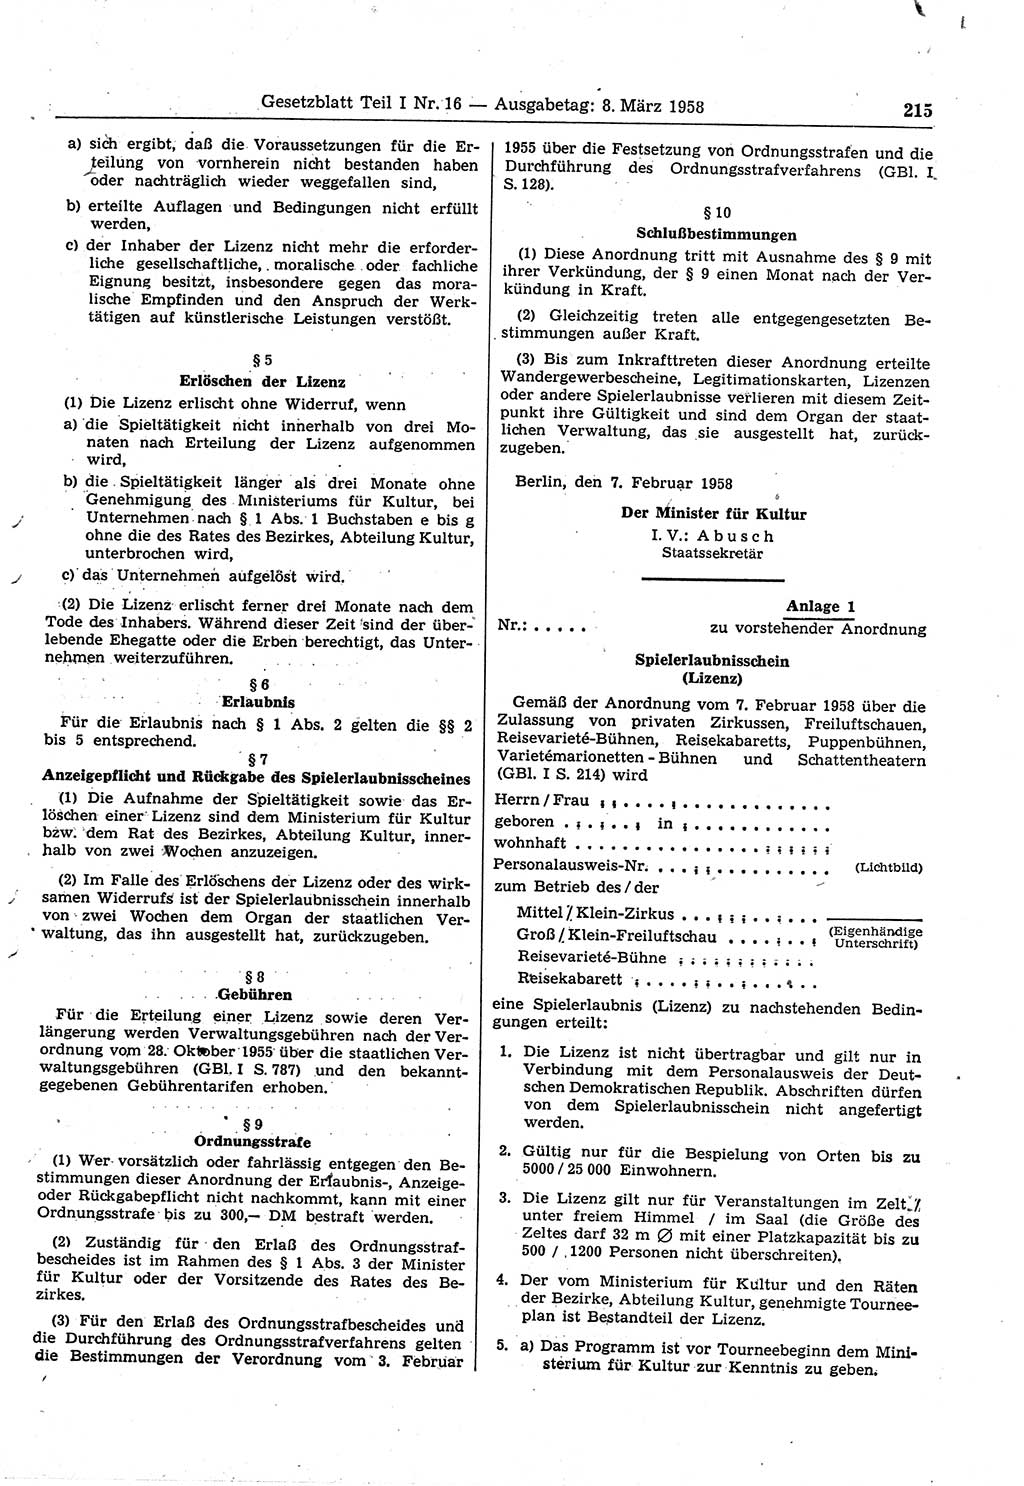 Gesetzblatt (GBl.) der Deutschen Demokratischen Republik (DDR) Teil Ⅰ 1958, Seite 215 (GBl. DDR Ⅰ 1958, S. 215)